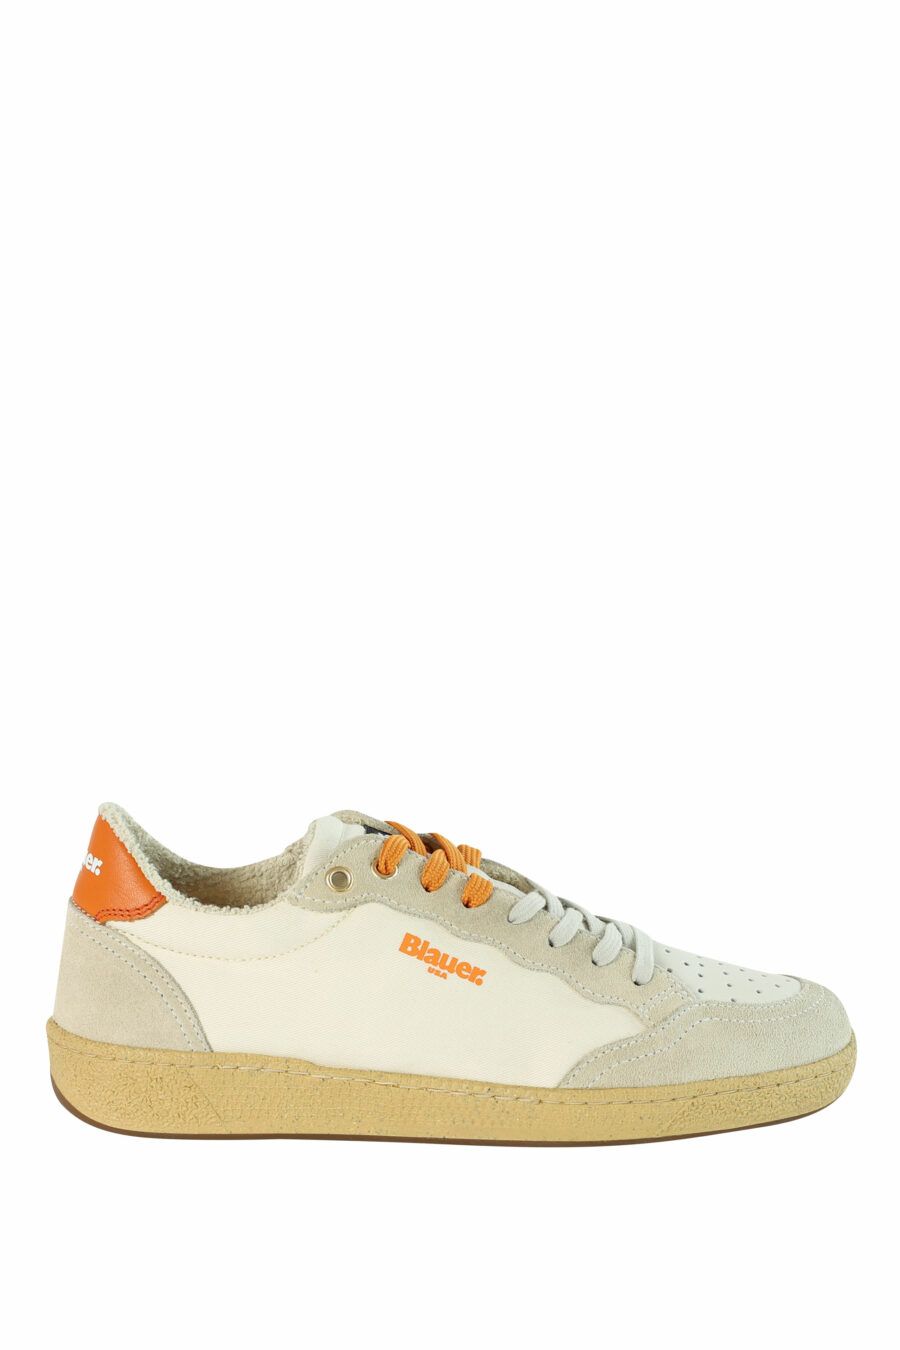 Zapatillas "MURRAY" blancas con detalles naranjas - 8058156497214